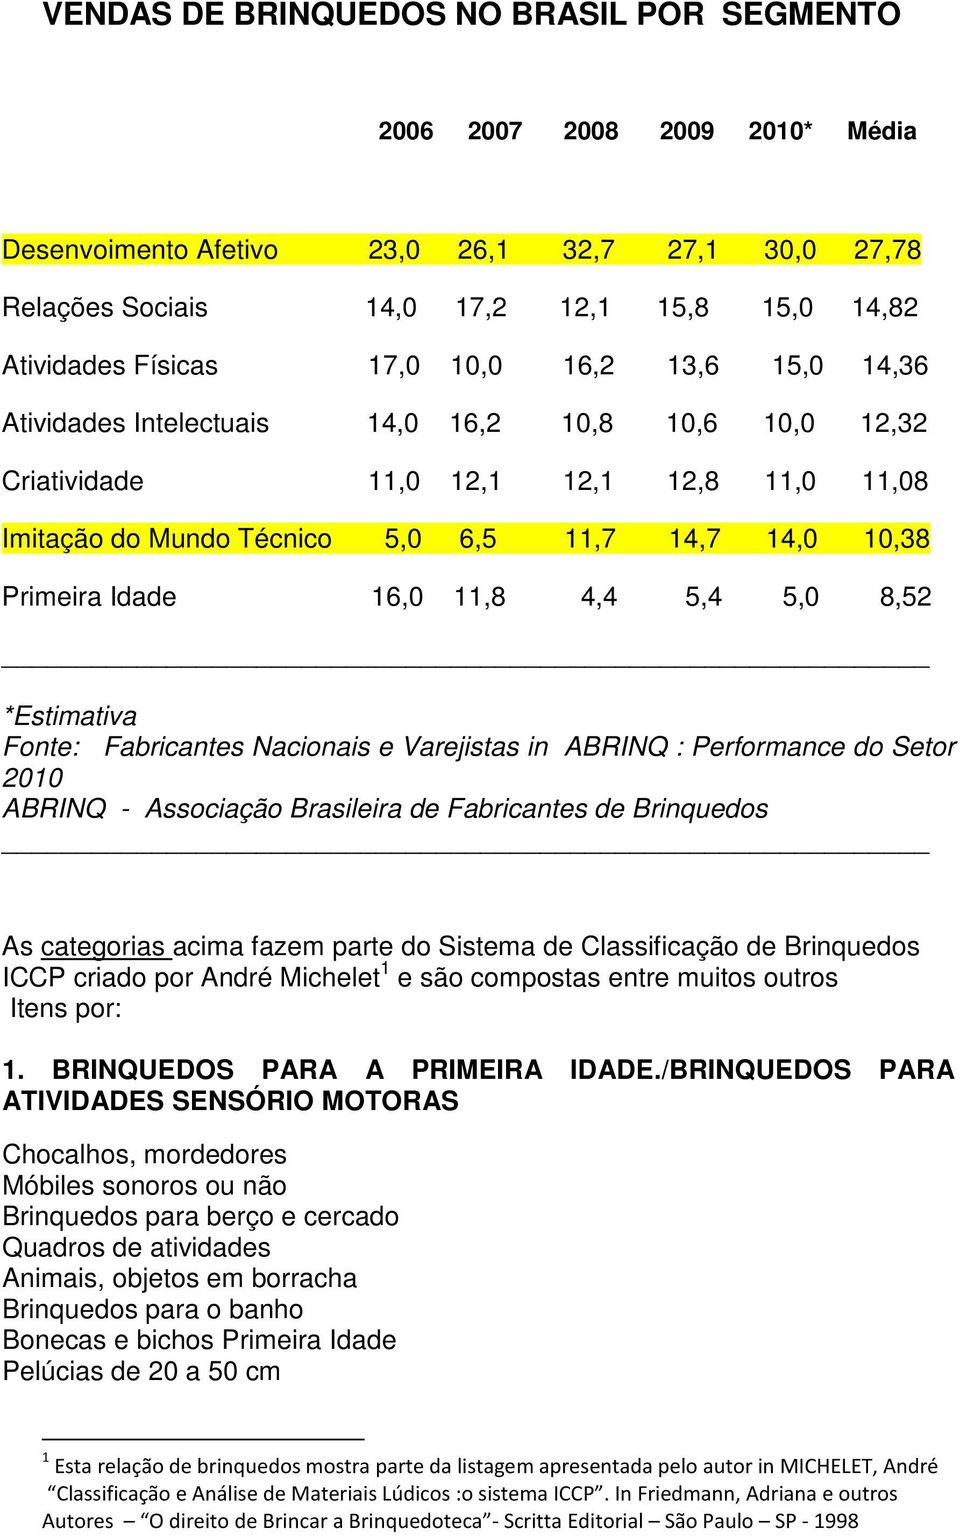 16,0 11,8 4,4 5,4 5,0 8,52 *Estimativa Fonte: Fabricantes Nacionais e Varejistas in ABRINQ : Performance do Setor 2010 ABRINQ - Associação Brasileira de Fabricantes de Brinquedos As categorias acima